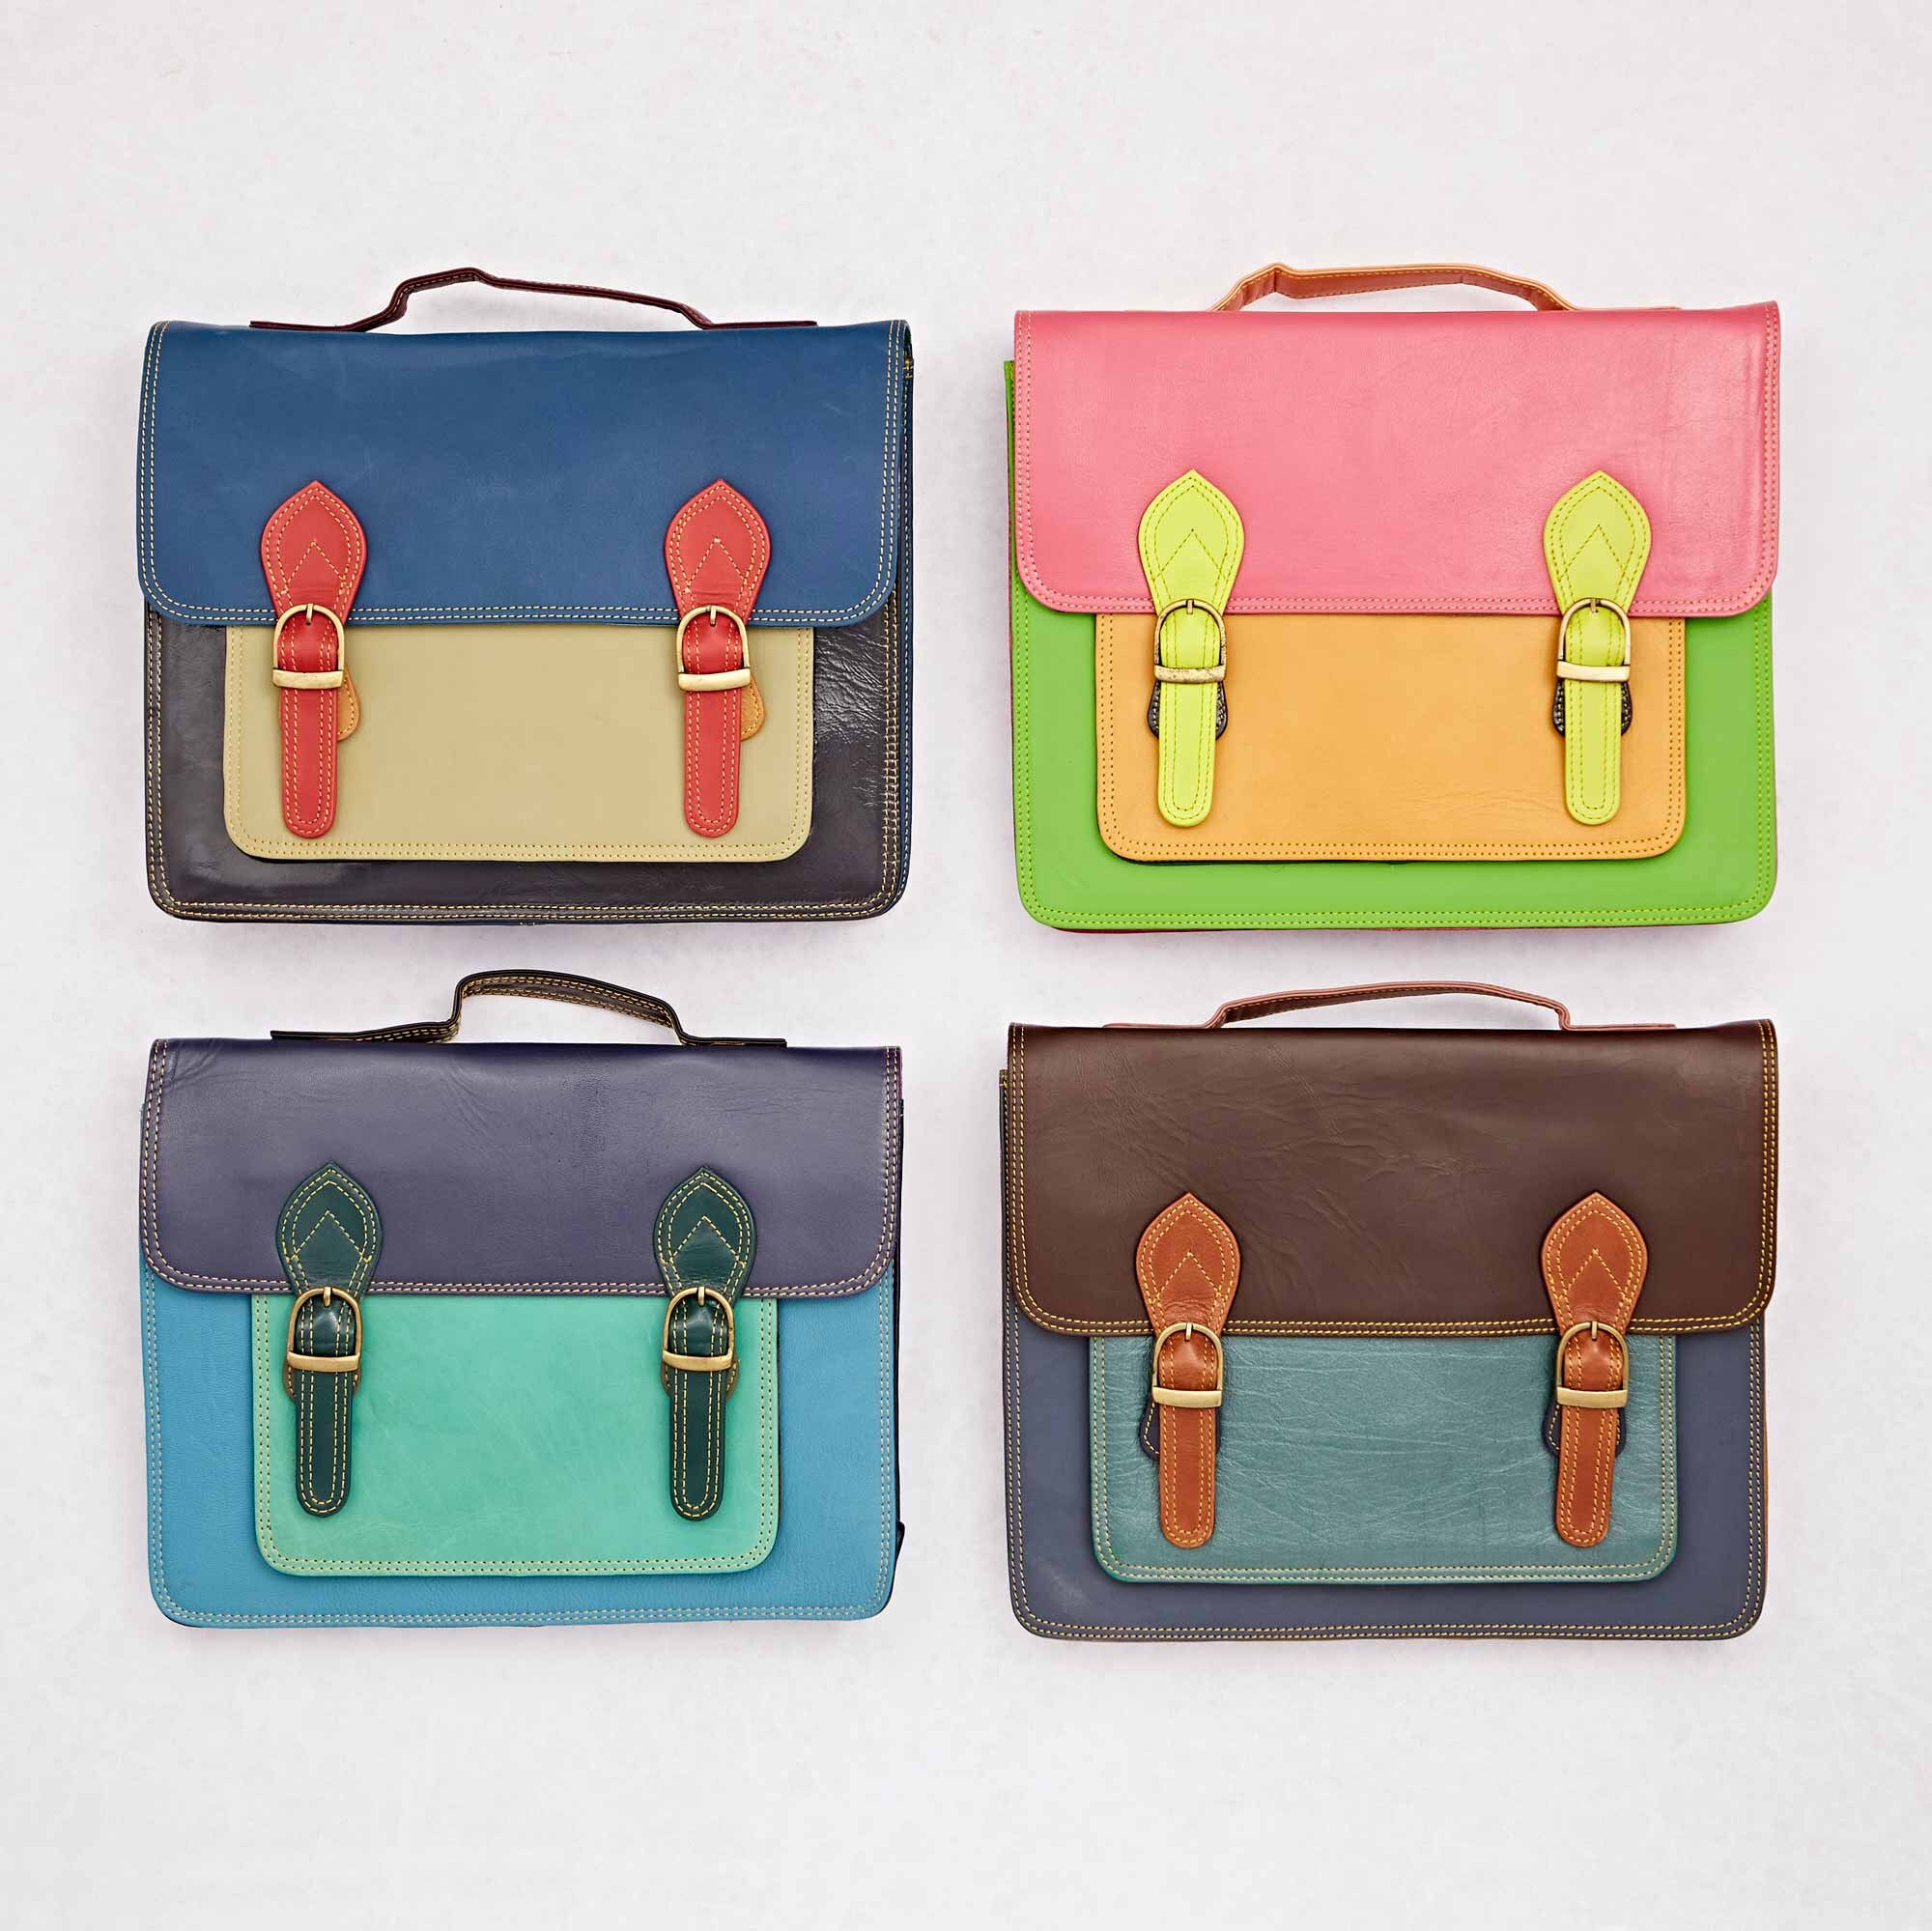 Tiffany & Co. XL Color Block Tote Crossbody Leather Bag (Box, Pouch, R –  Anna's Treasure Box LLC